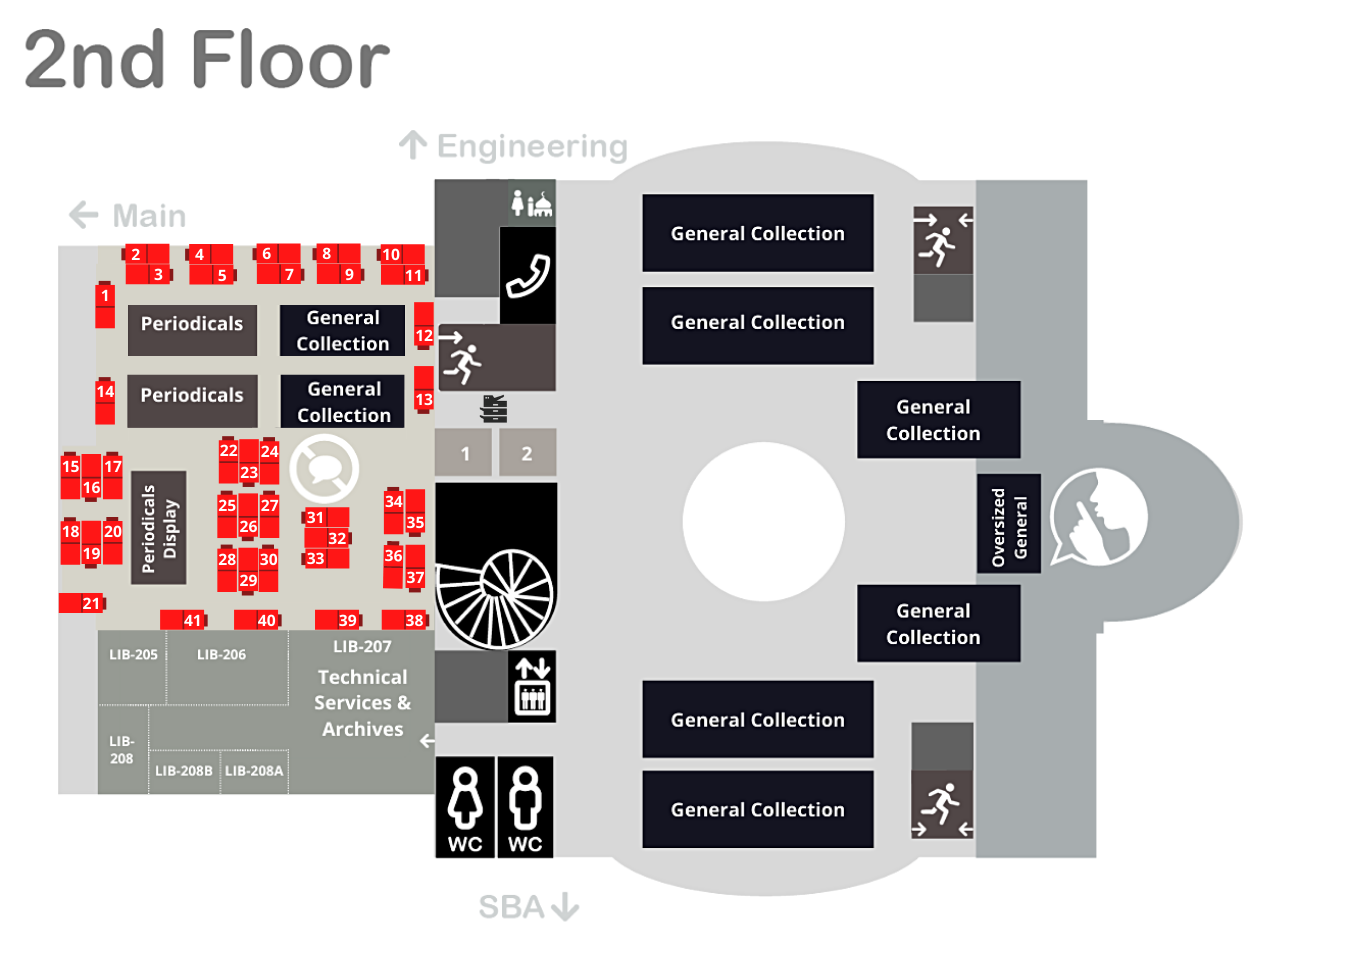 Single Carrel Desk (Silent Study Area) Second Floor Map